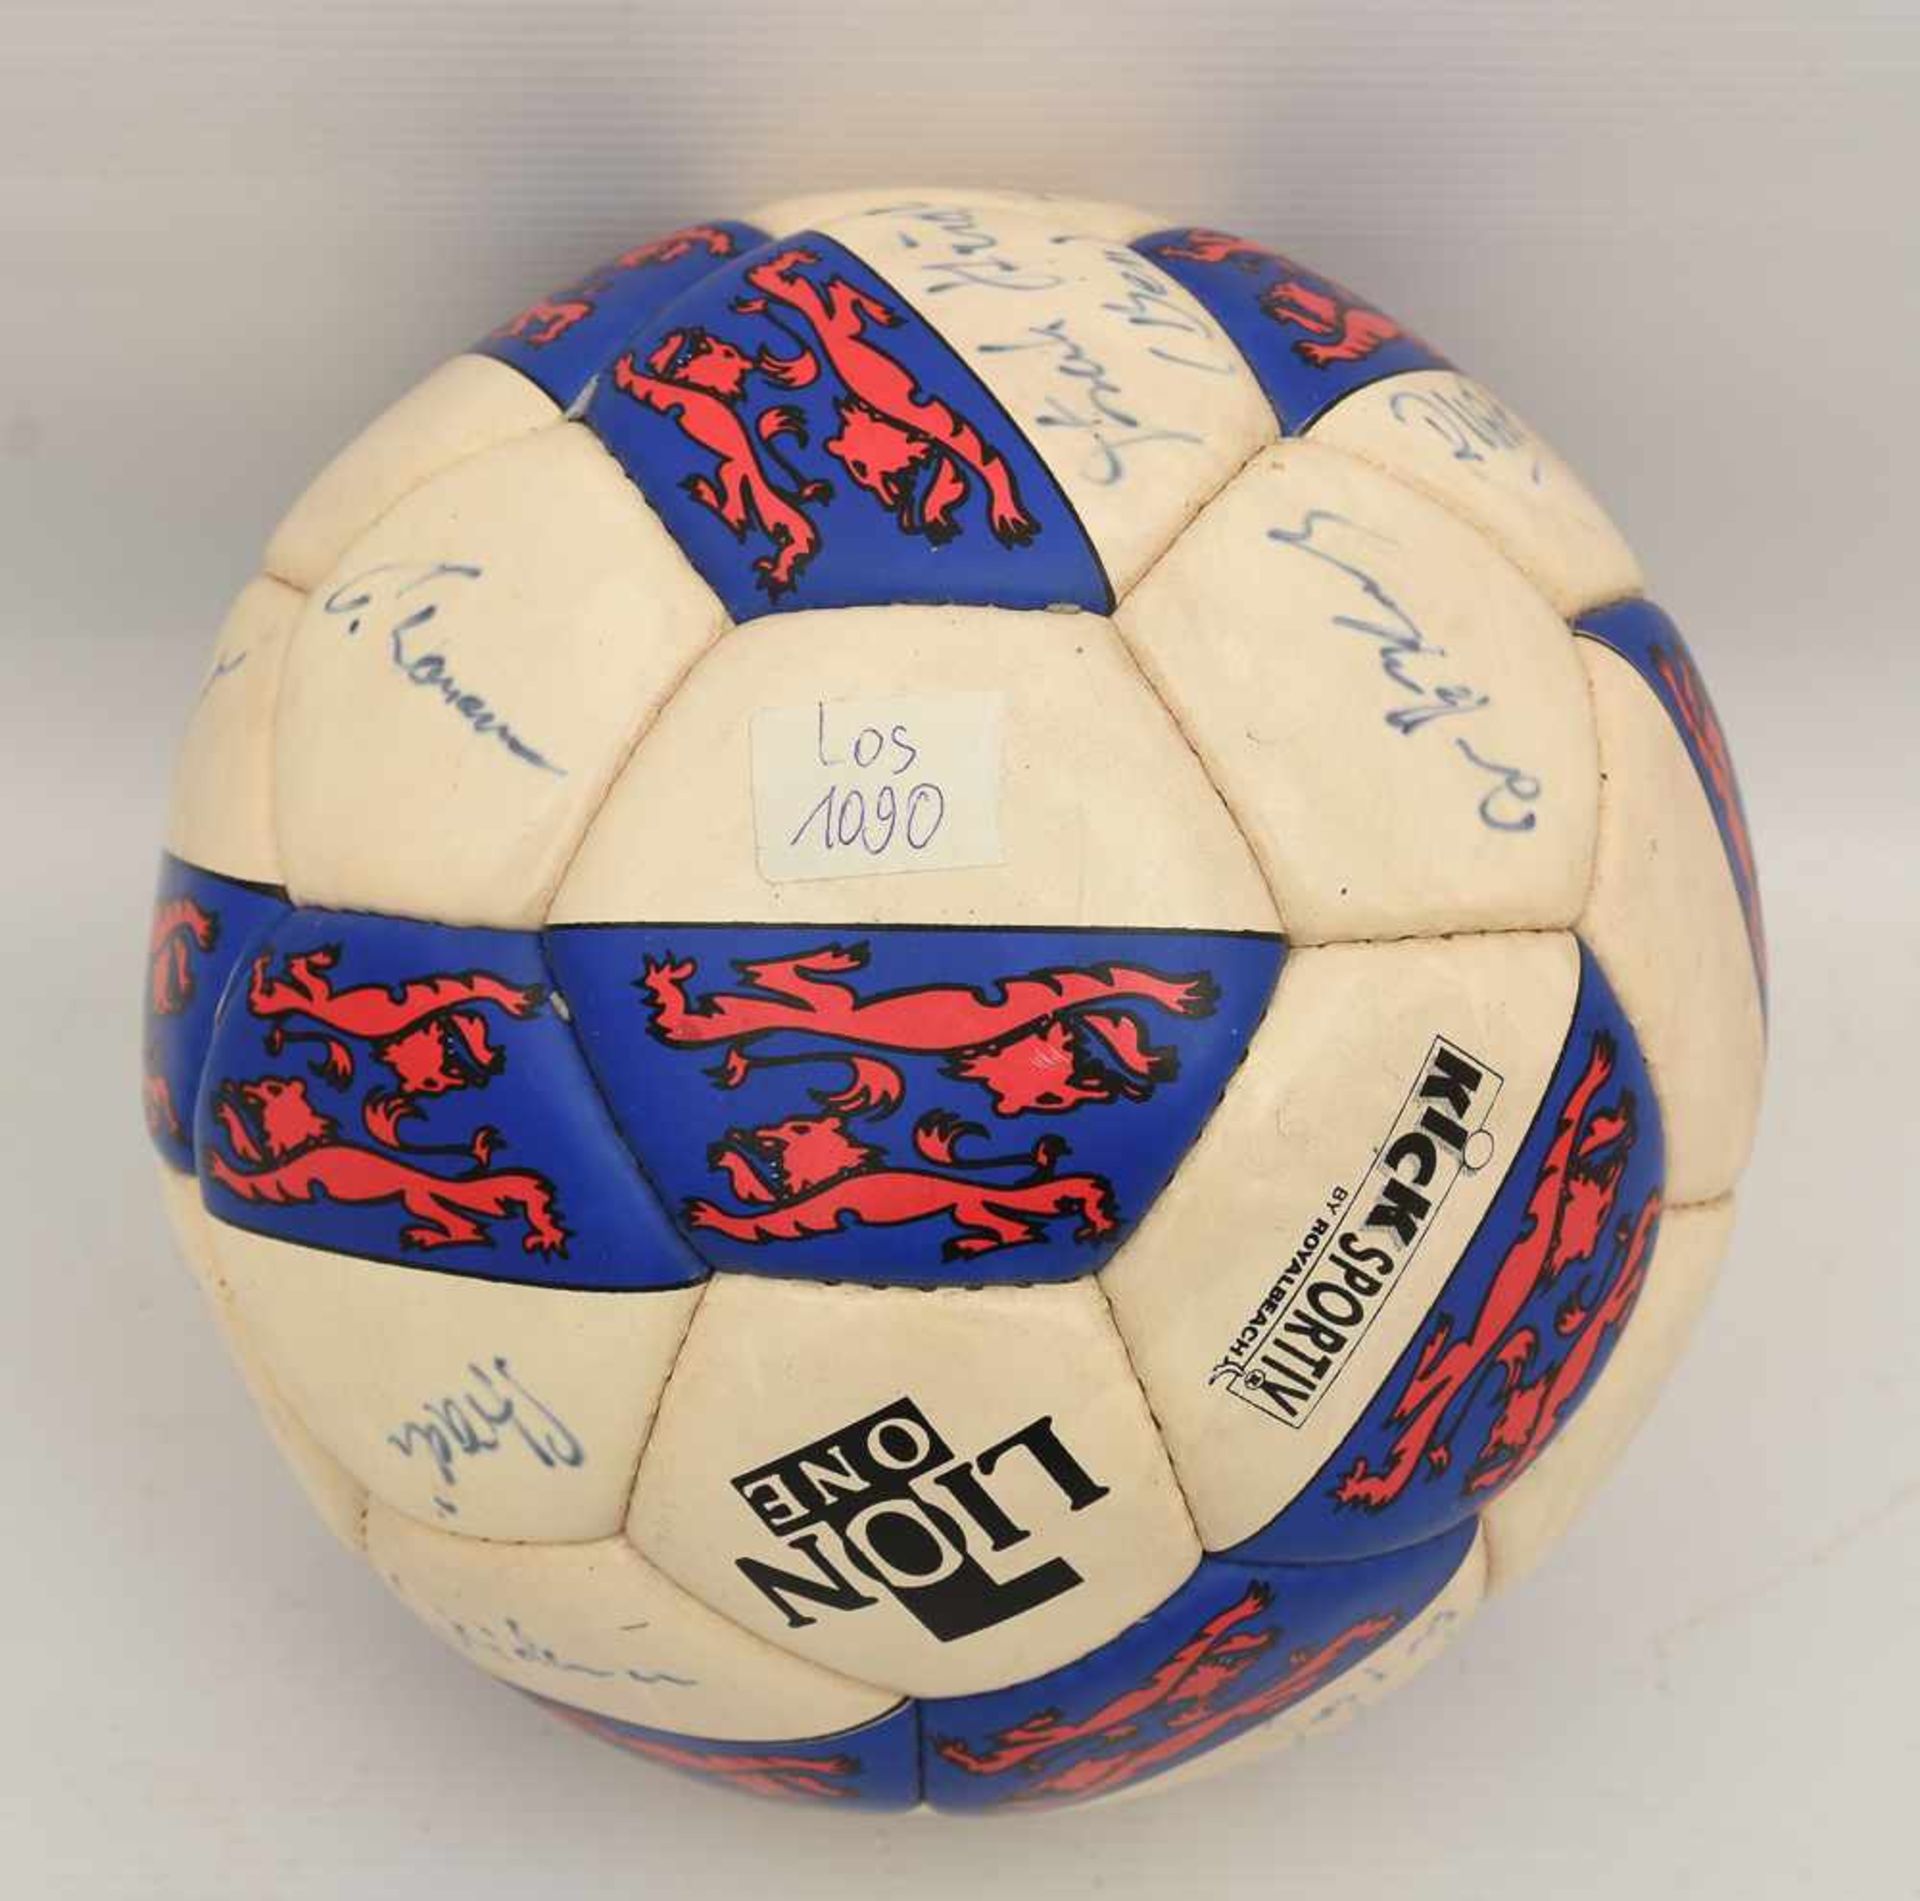 SIGNIERTER BALL "WALDAU POKAL 1994", 1994 Mit zahlreichen Unterschriften. Bespielt. Altersspuren.